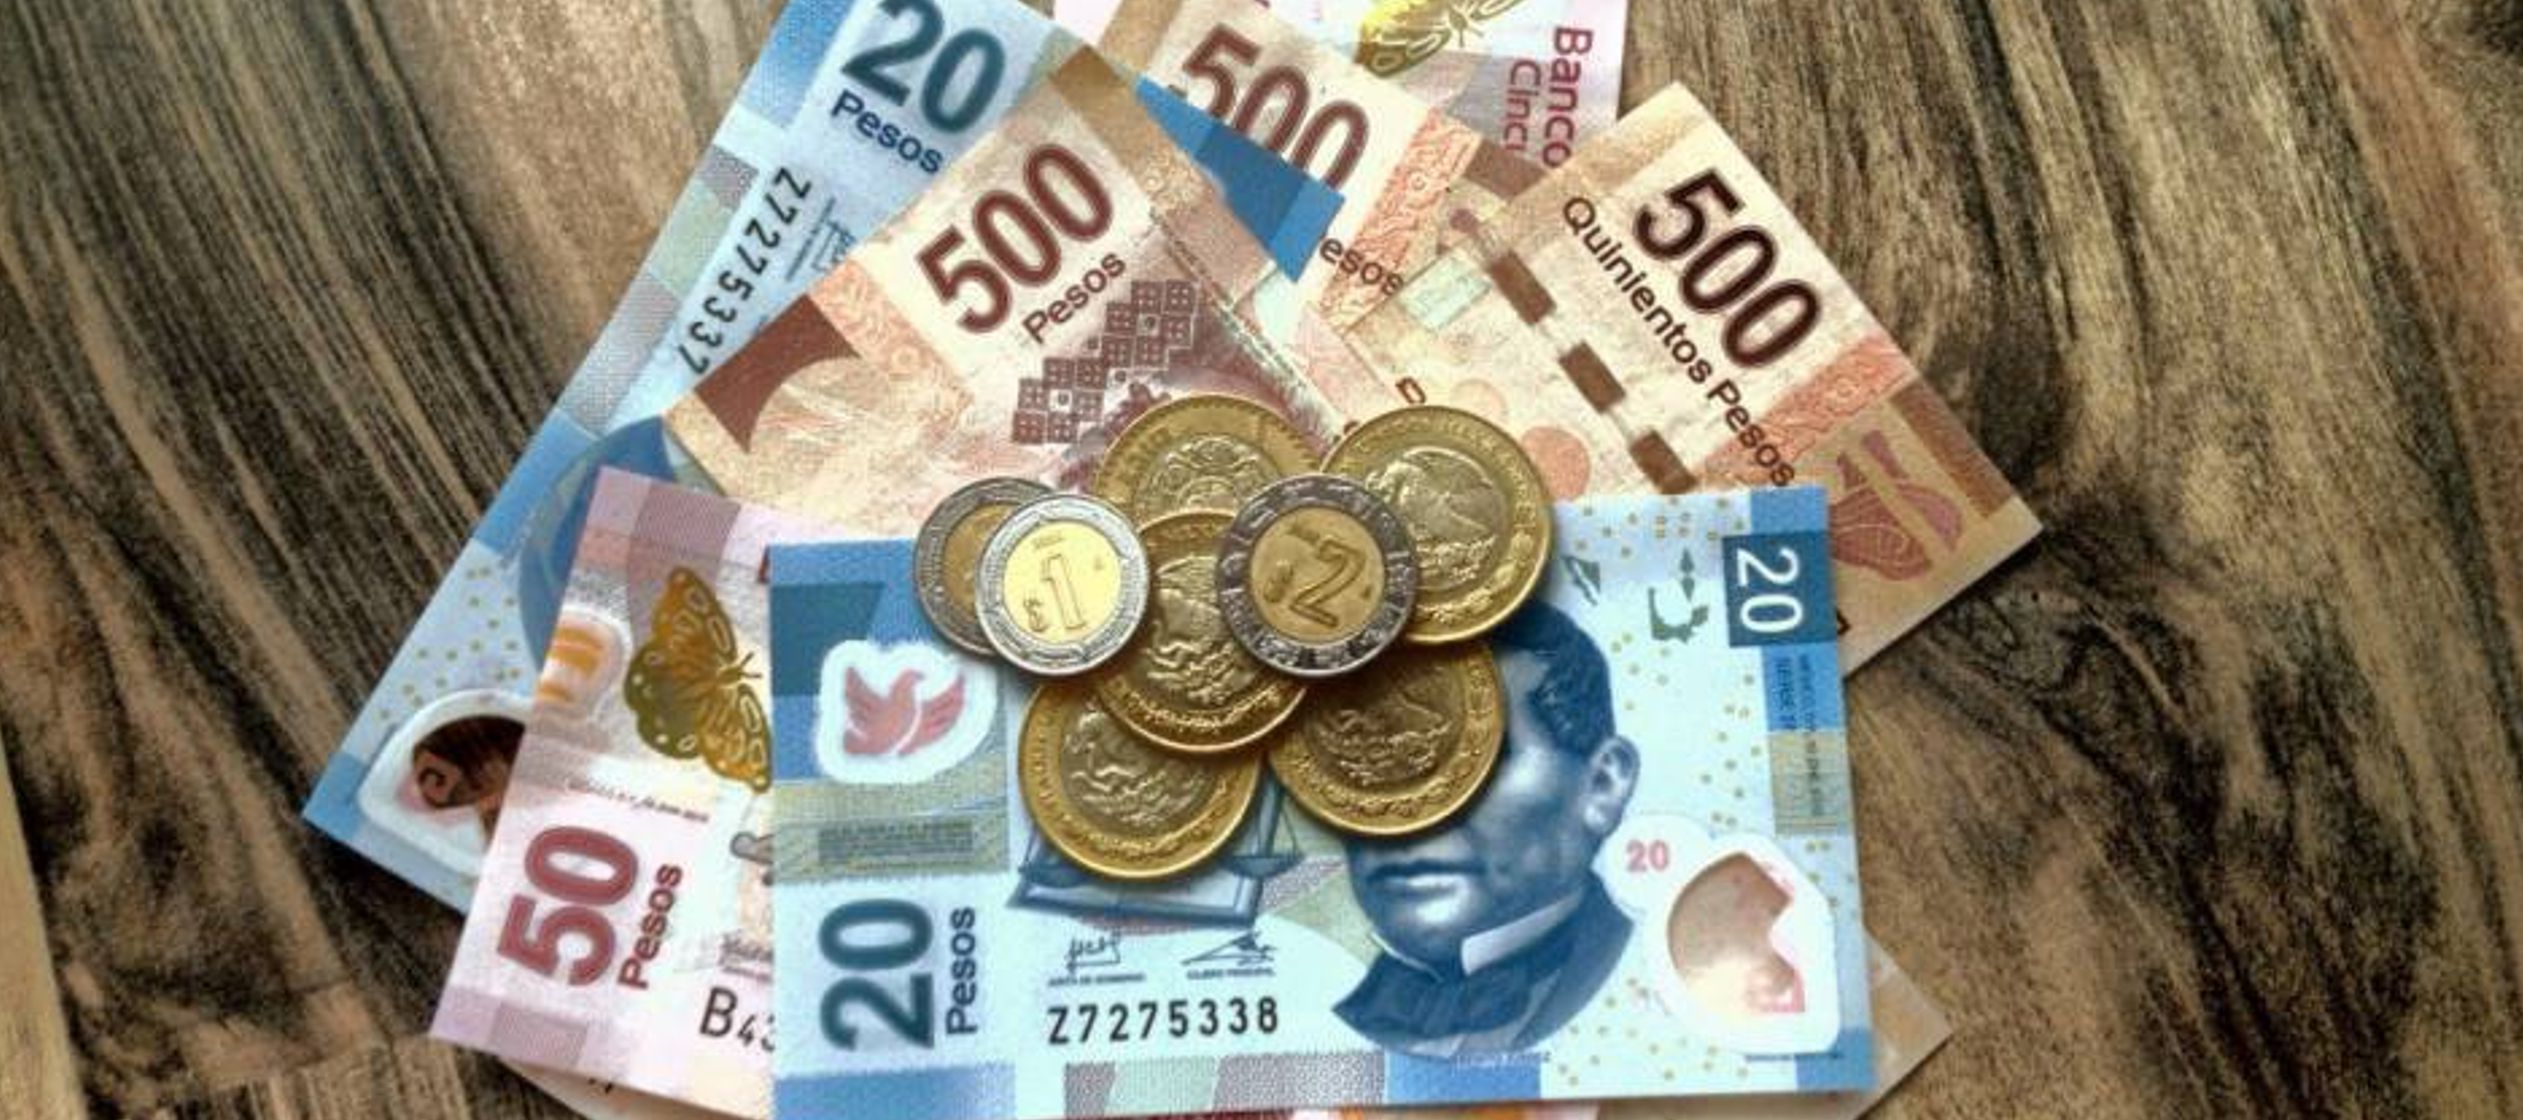 Fajos de billetes de 50 pesos mexicanos en una casa de cambios en Ciudad Juárez,...